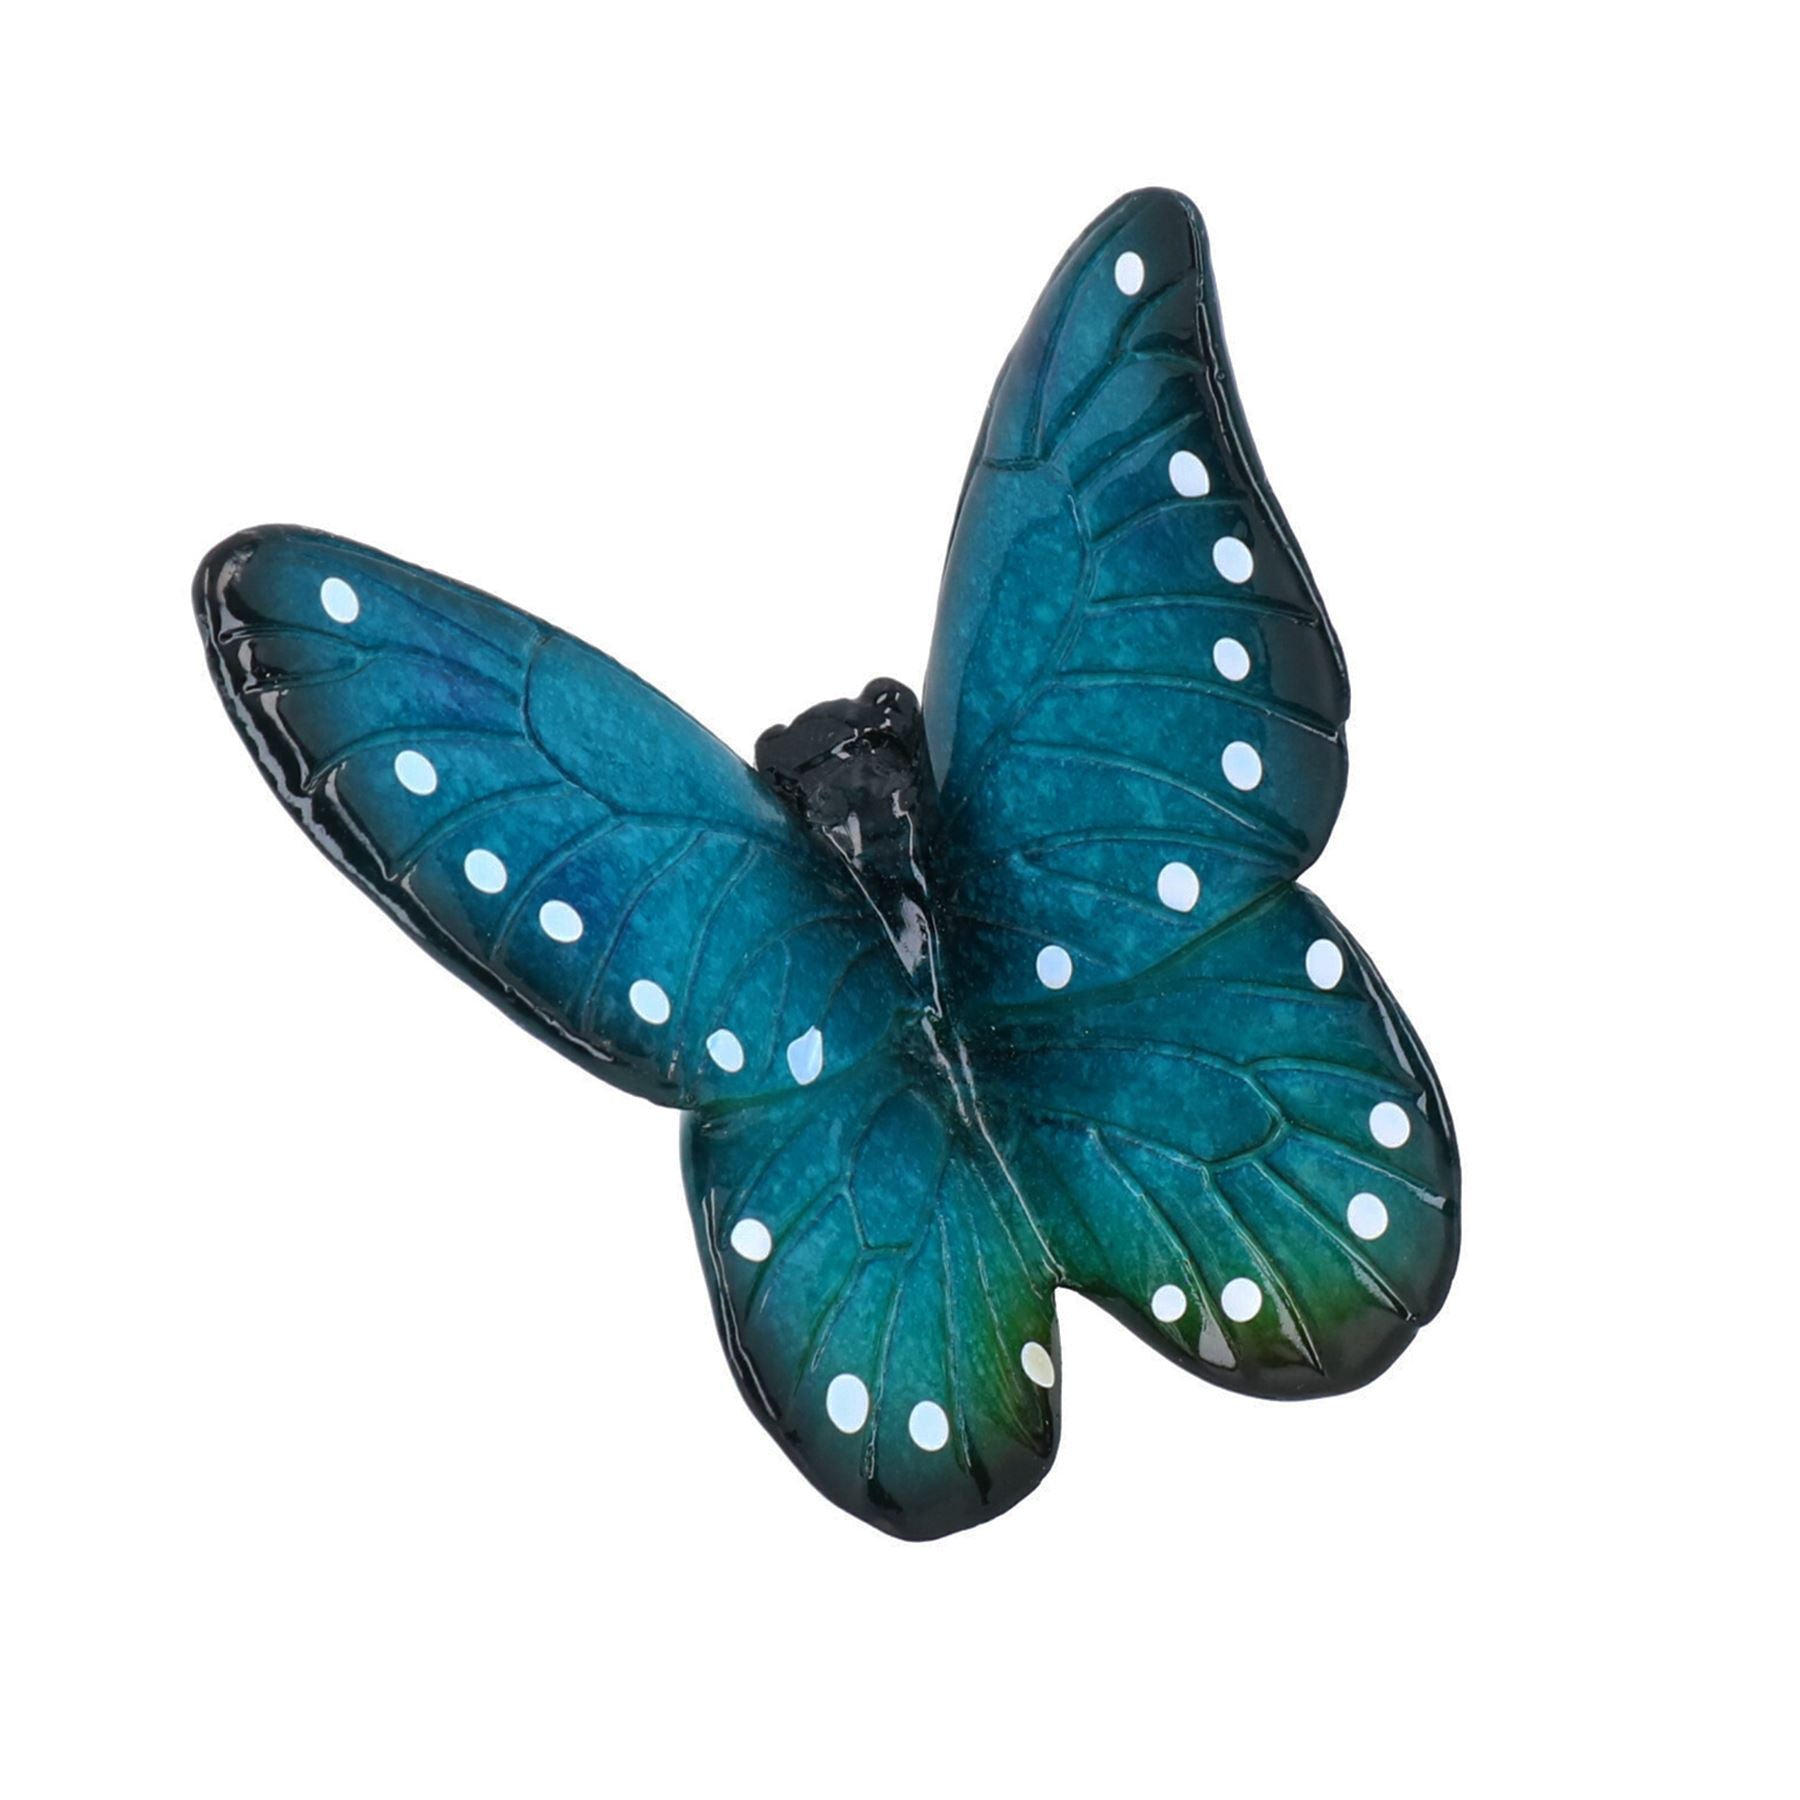 Blue Wall Mount Pair Butterflies Resin Shed Sculpture Statue Garden Butterfly